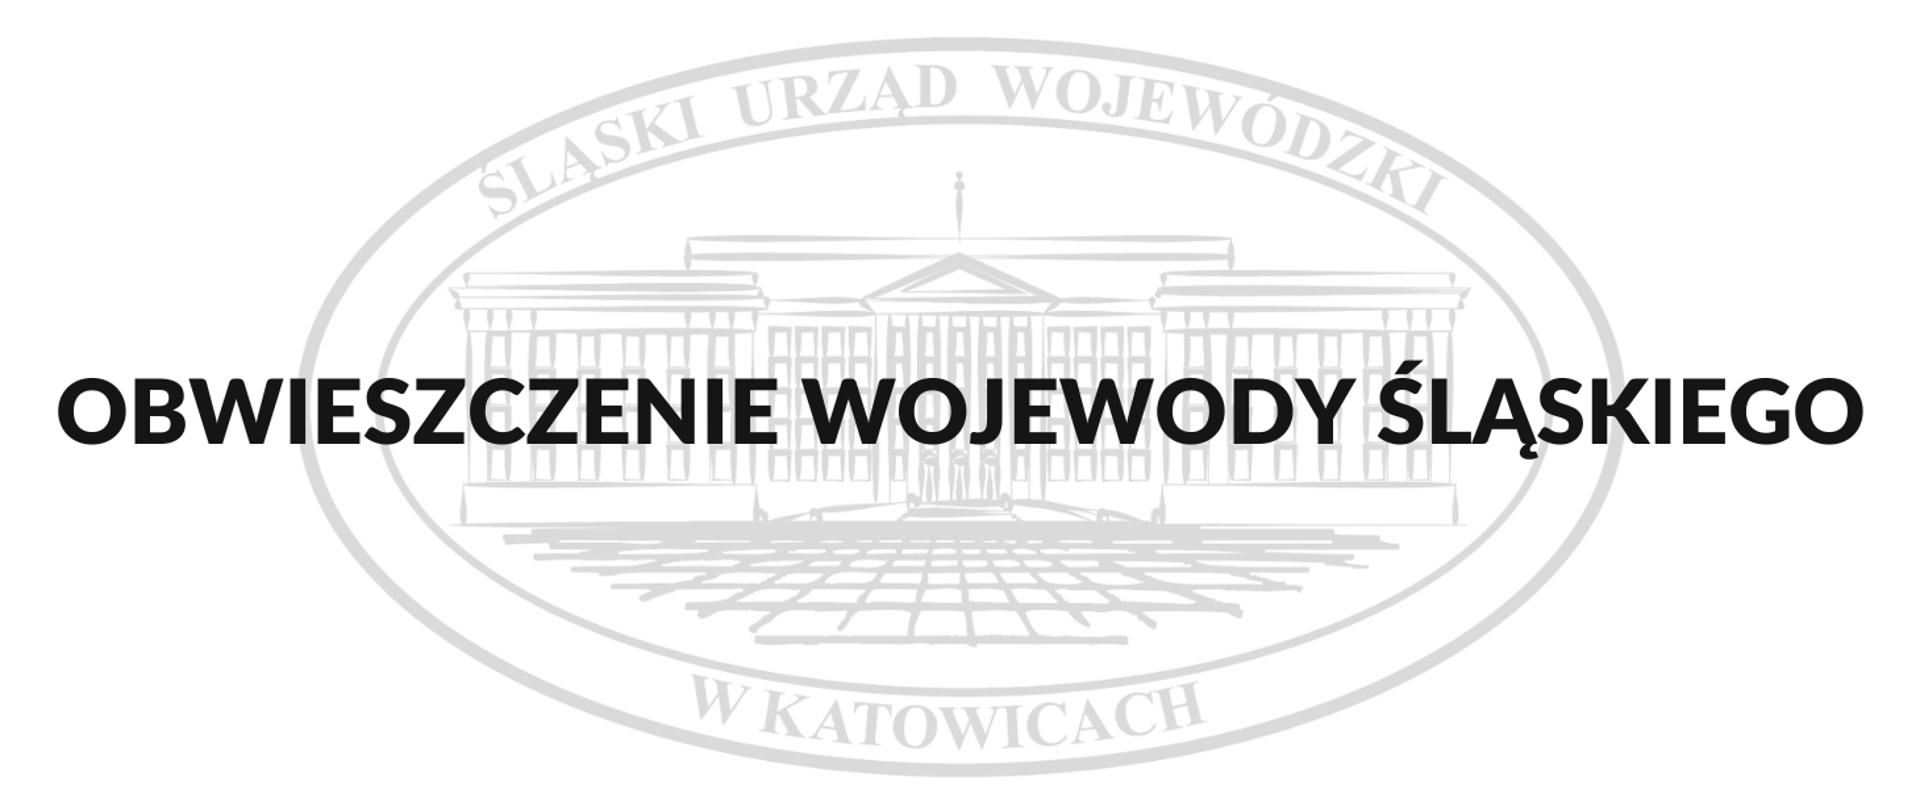 Obwieszczenie Wojewody Śląskiego - napis, w tle logo Śląskiego Urzędu Wojewódzkiego w Katowicach